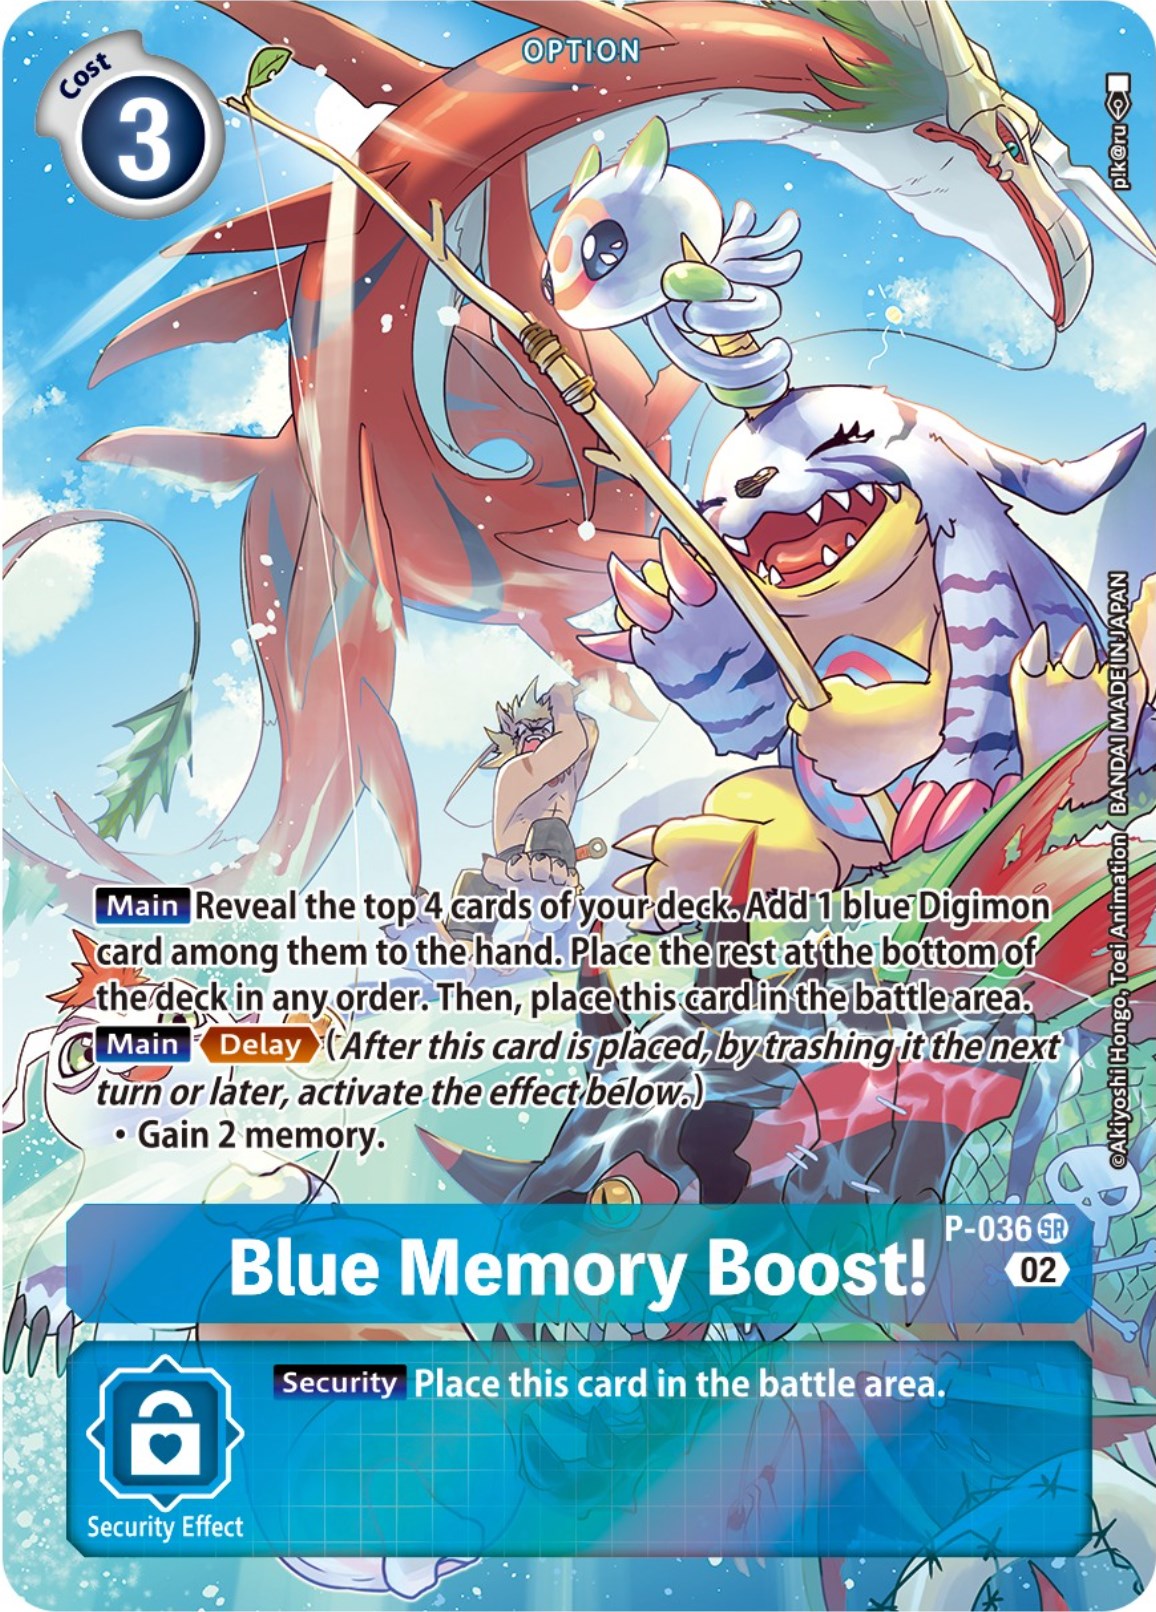 Blue Memory Boost! - P-036 (Digimon Adventure Box 2) [P-036] [Digimon Promotion Cards] Foil